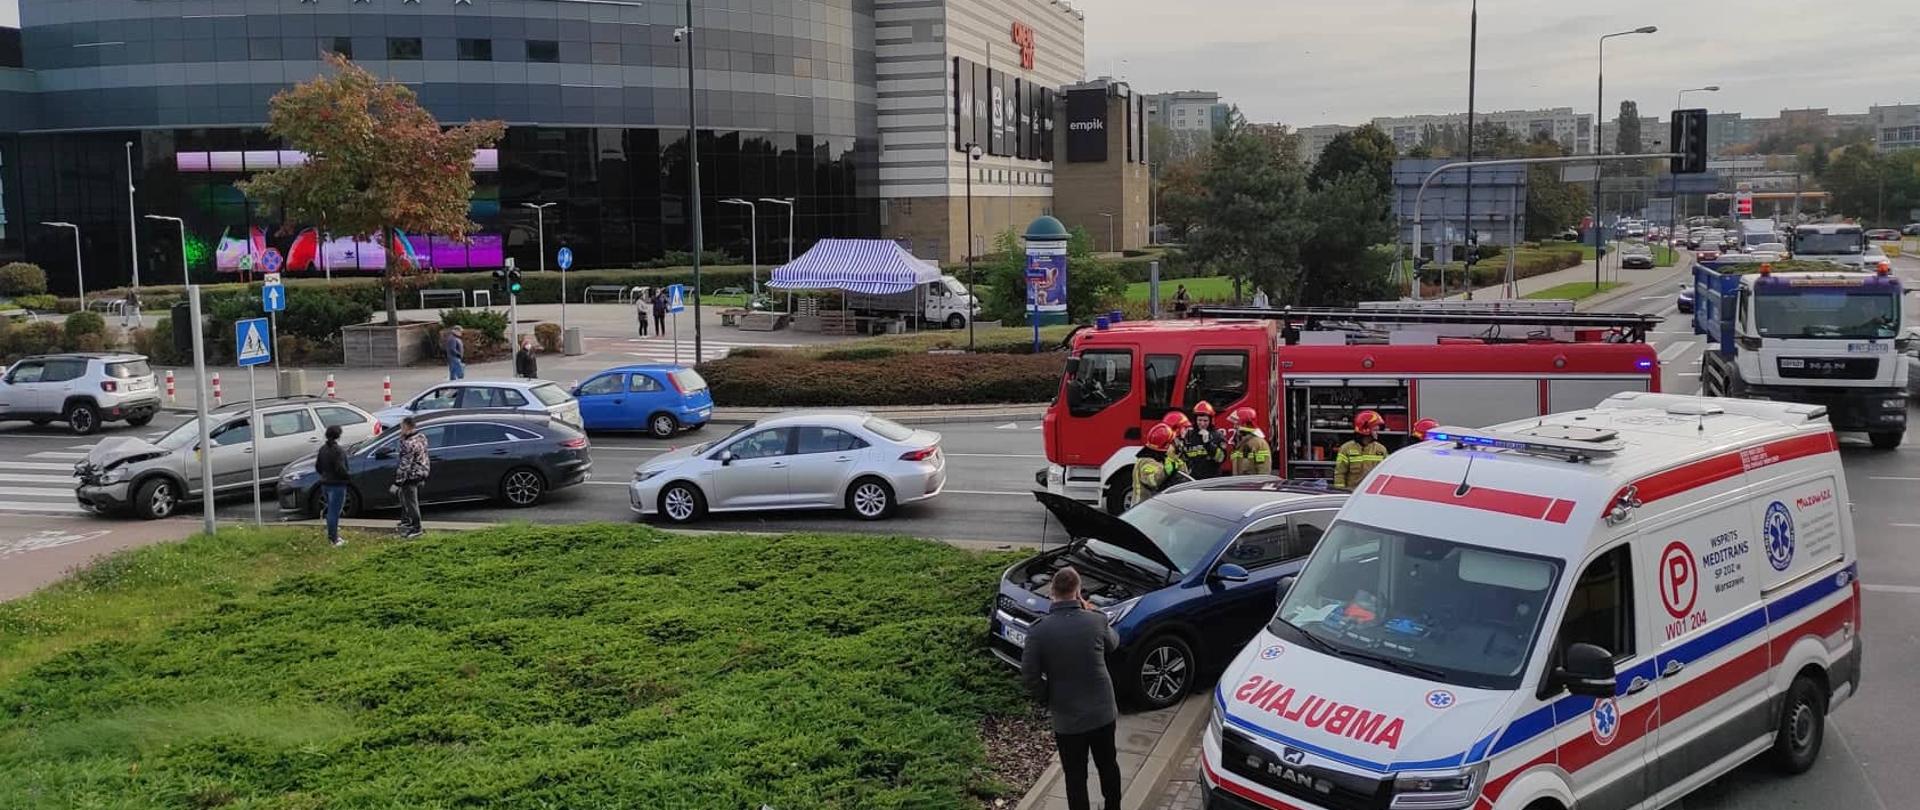 Na zdjęciu widoczne są dwa pojazdy, które brały udział w wypadku, pracujący strażacy oraz karetka pogotowia, straż pożarna. W tle budynek galerii handlowej.
